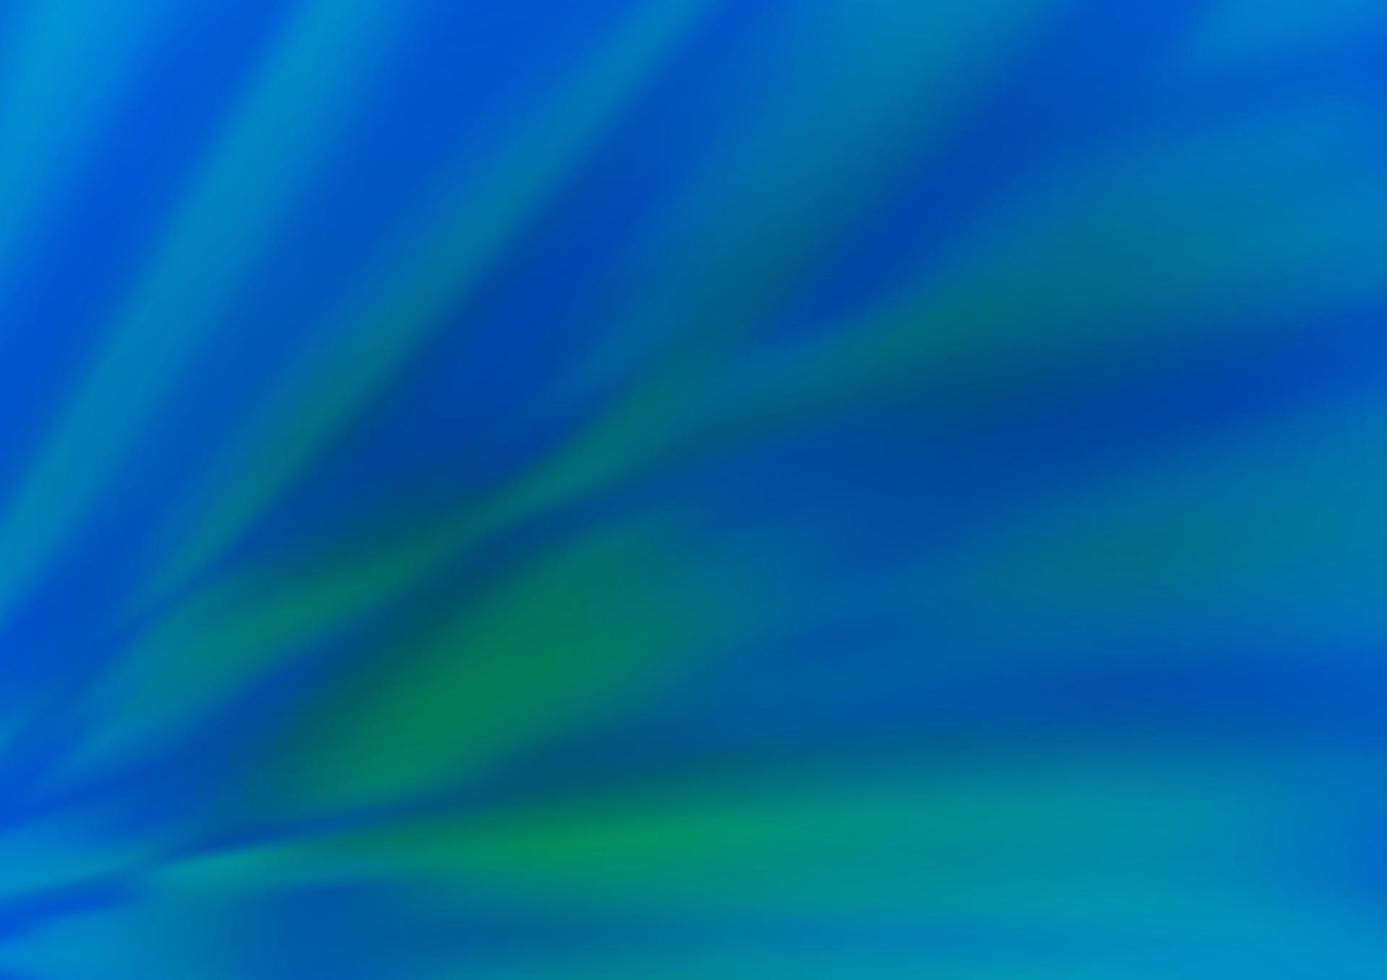 ljusblå, grön vektor abstrakt suddigt mönster.